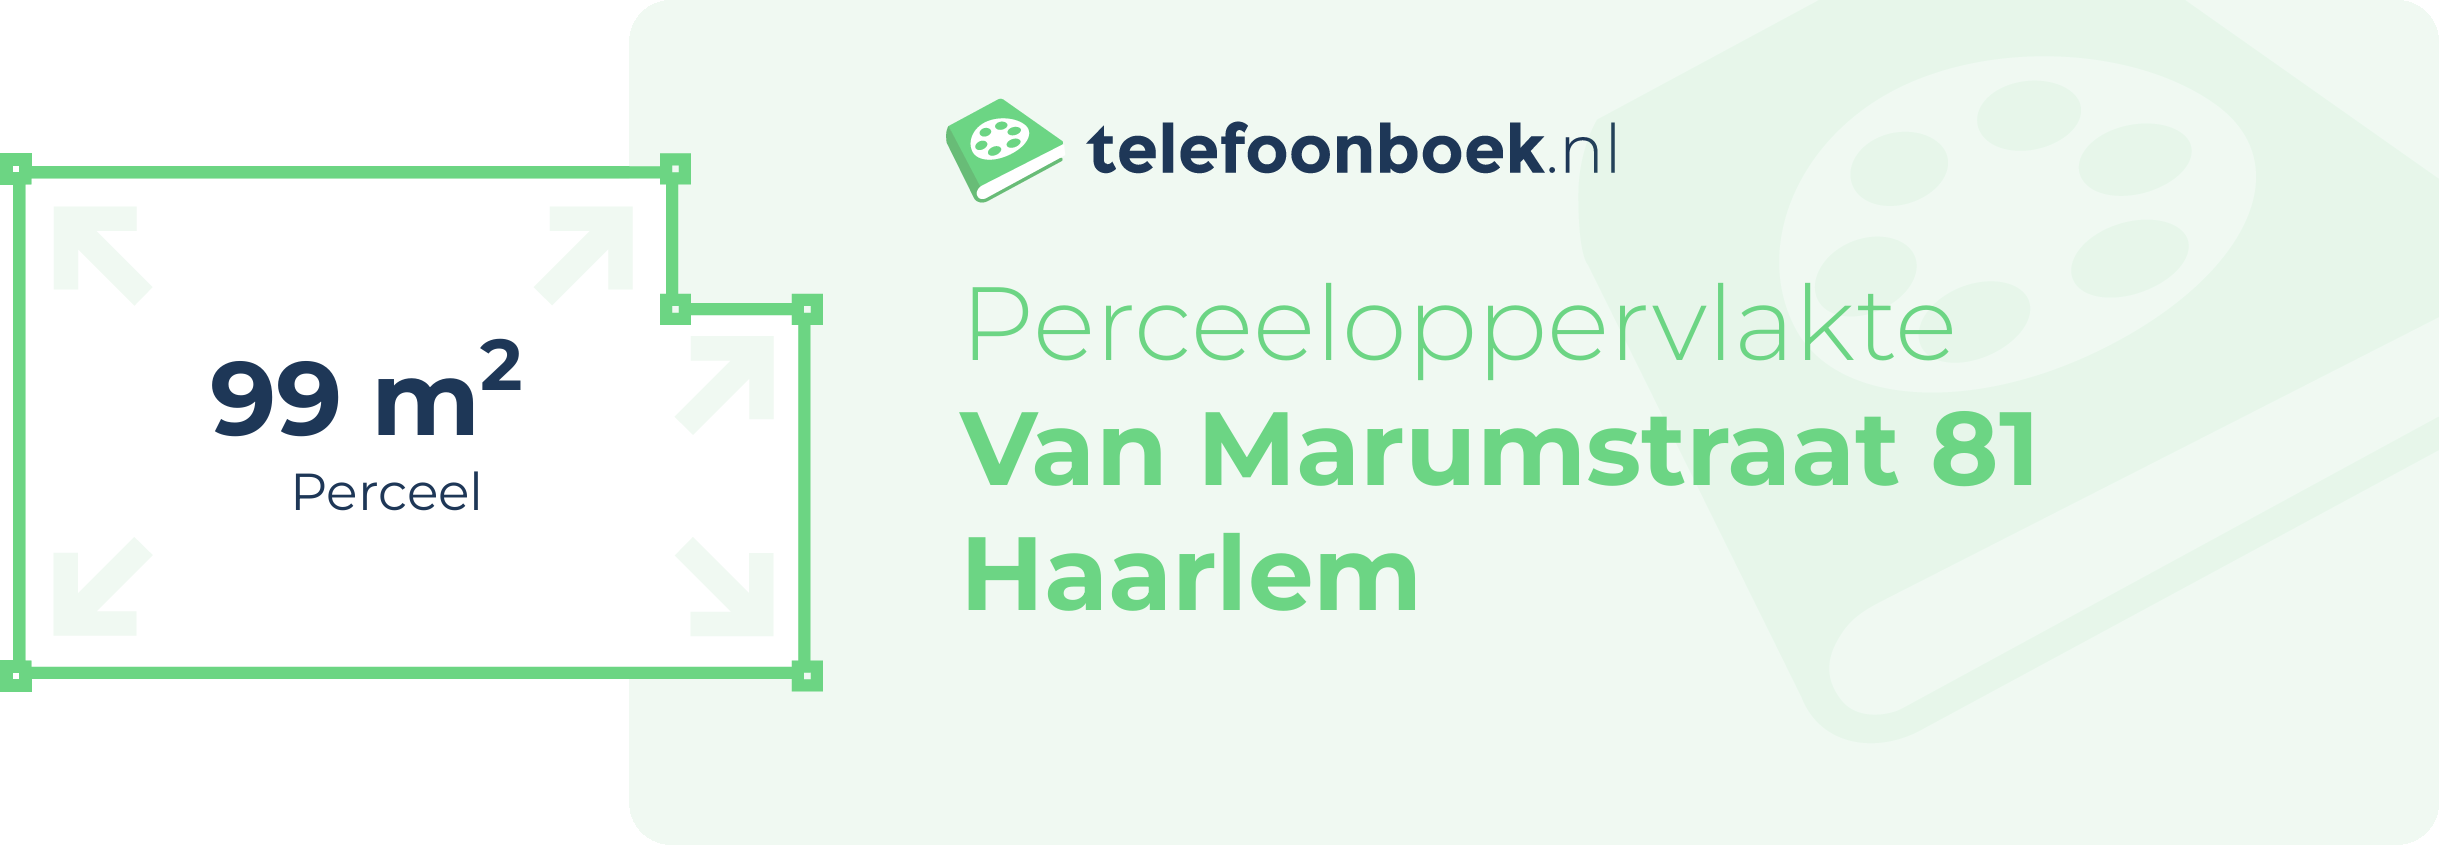 Perceeloppervlakte Van Marumstraat 81 Haarlem